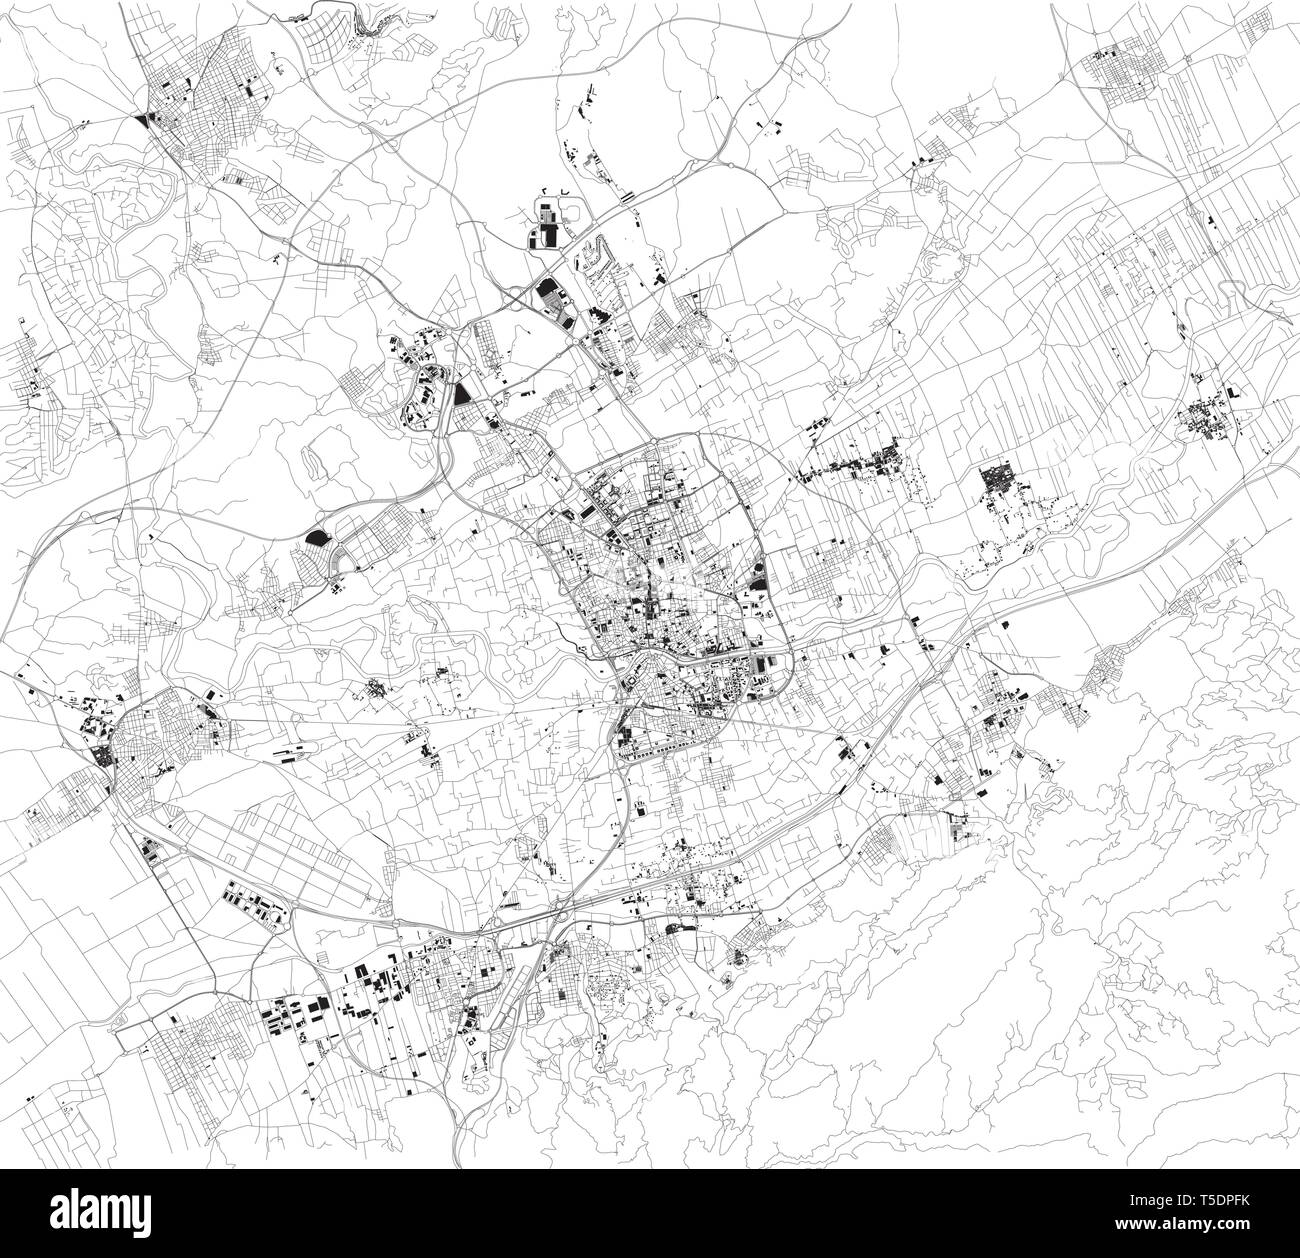 Carte Satellite de Murcie, c'est une ville dans le sud-est de l'Espagne. Carte des rues et bâtiments du centre-ville. L'Europe Illustration de Vecteur